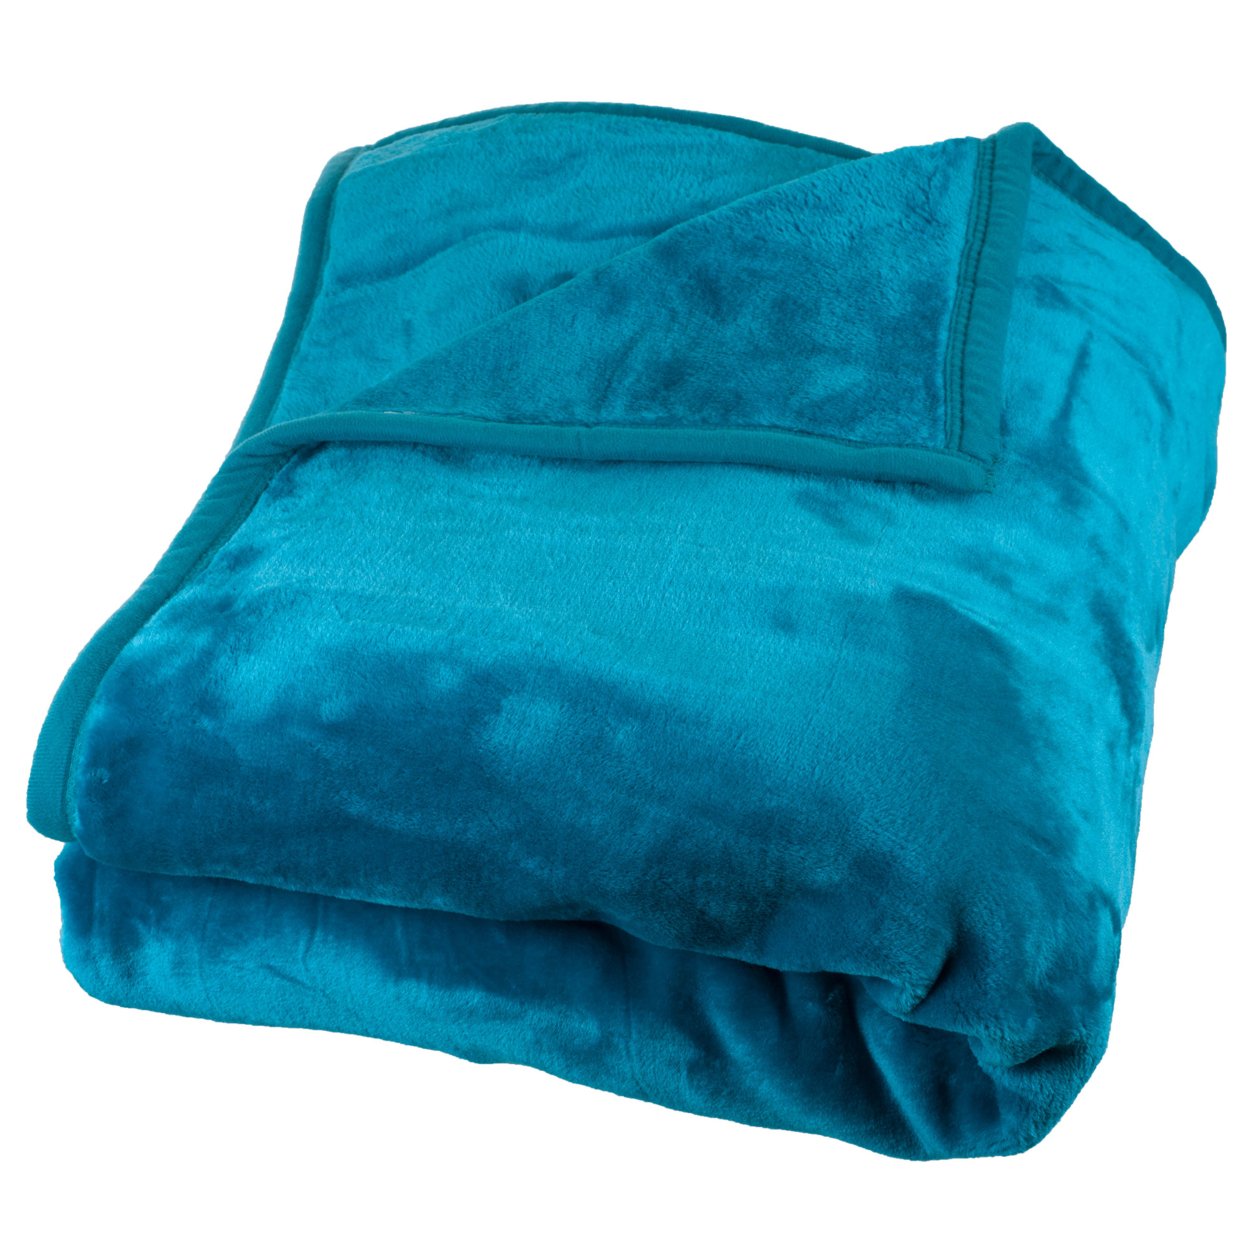 Lavish Home Solid Soft Heavy Thick Plush Mink Blanket 8 Pound - Aqua